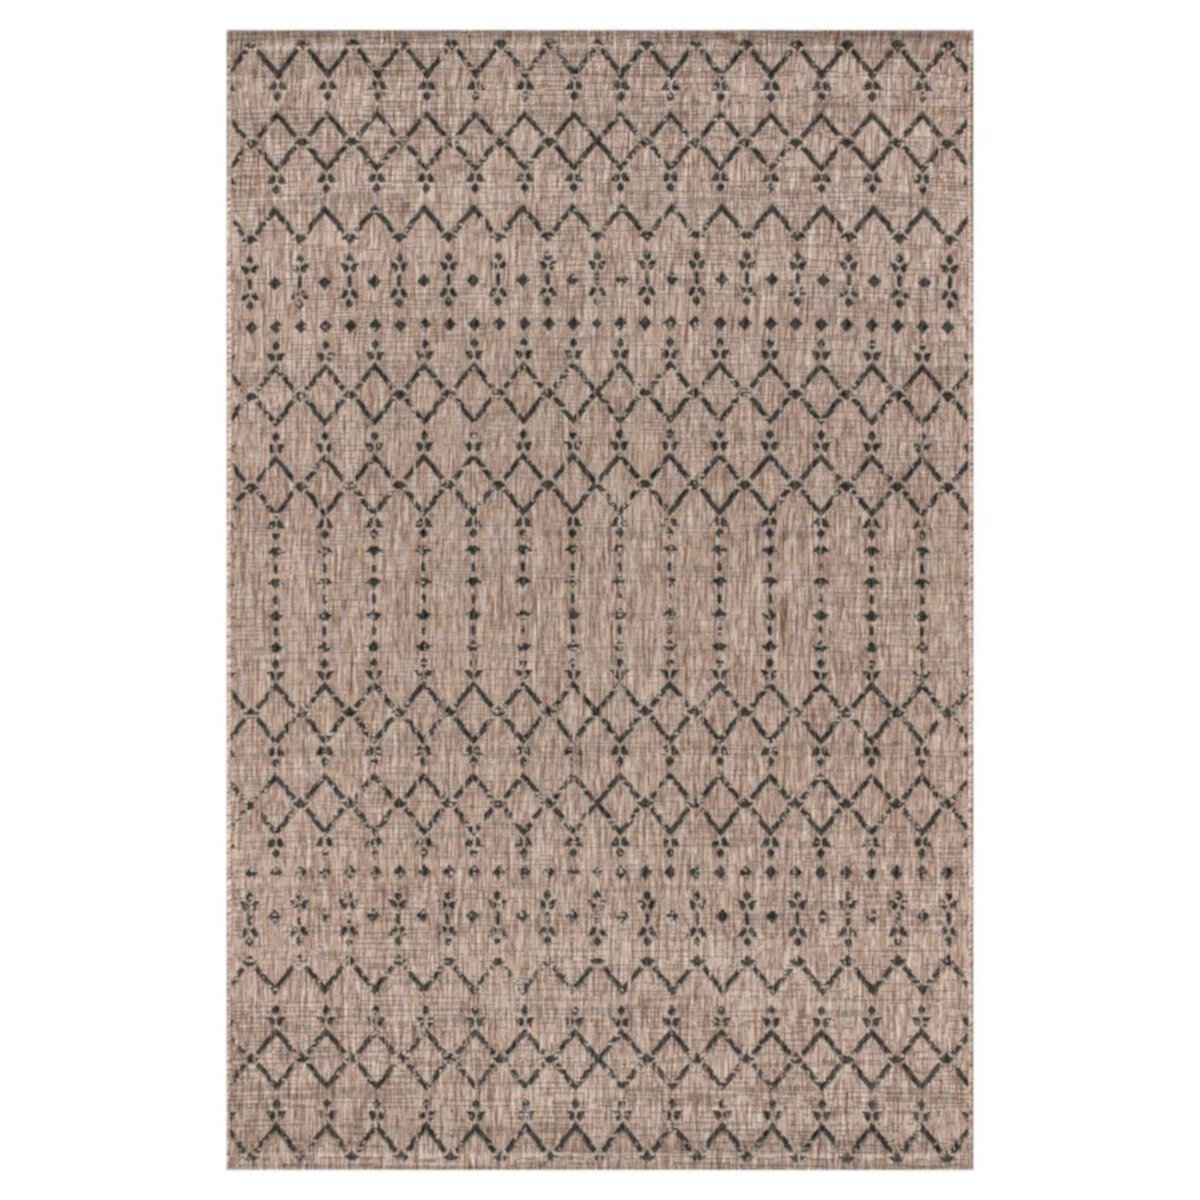 Ourika Марокканский коврик с геометрическим текстурированным плетением для дома и улицы Jonathan Y Designs